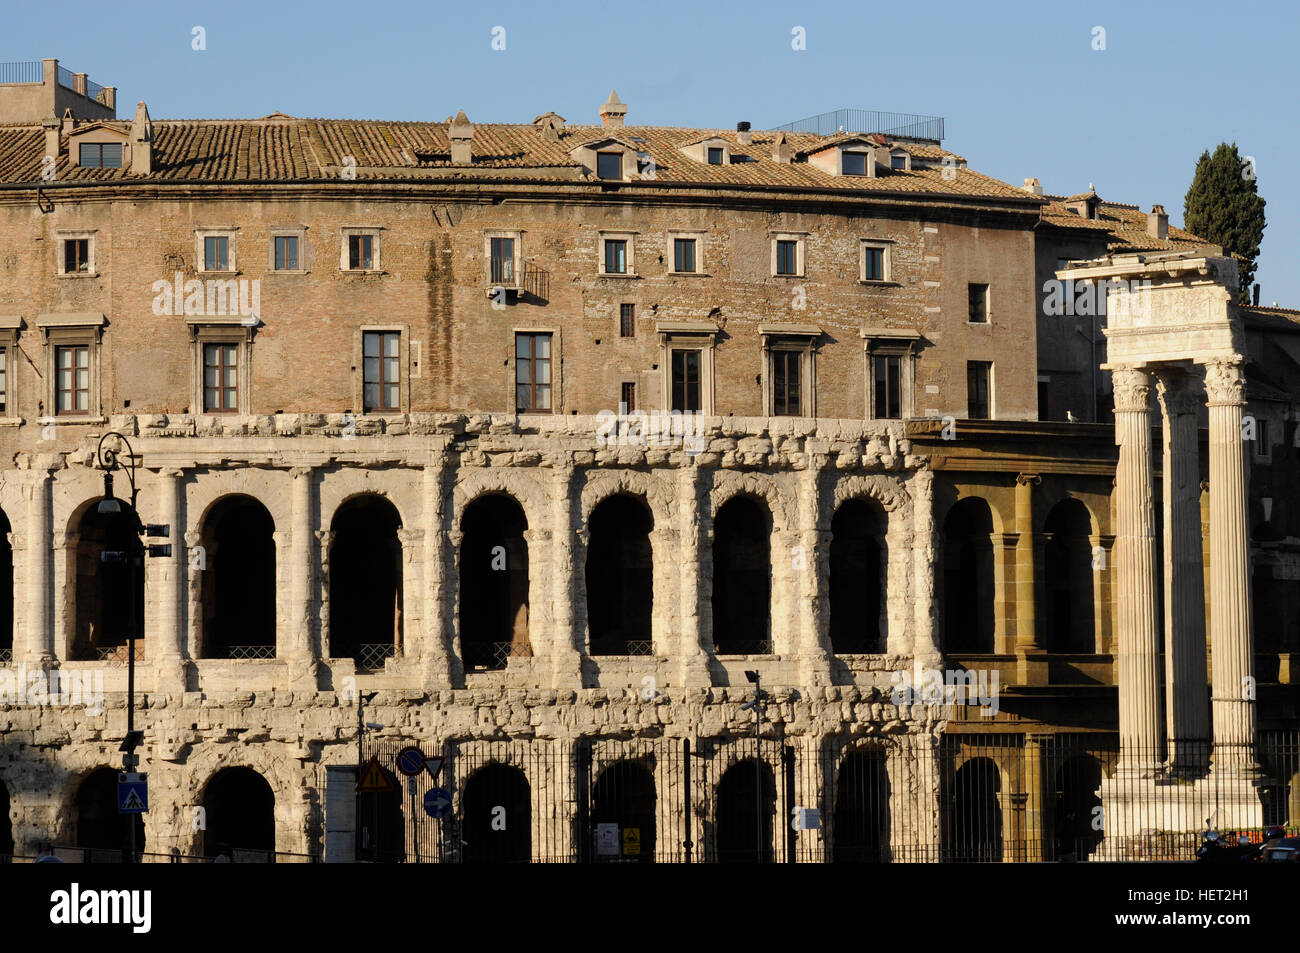 Le théâtre de Marcellus est un ancien théâtre en plein air, à Rome, en Italie, construit dans les dernières années de la République romaine. Banque D'Images